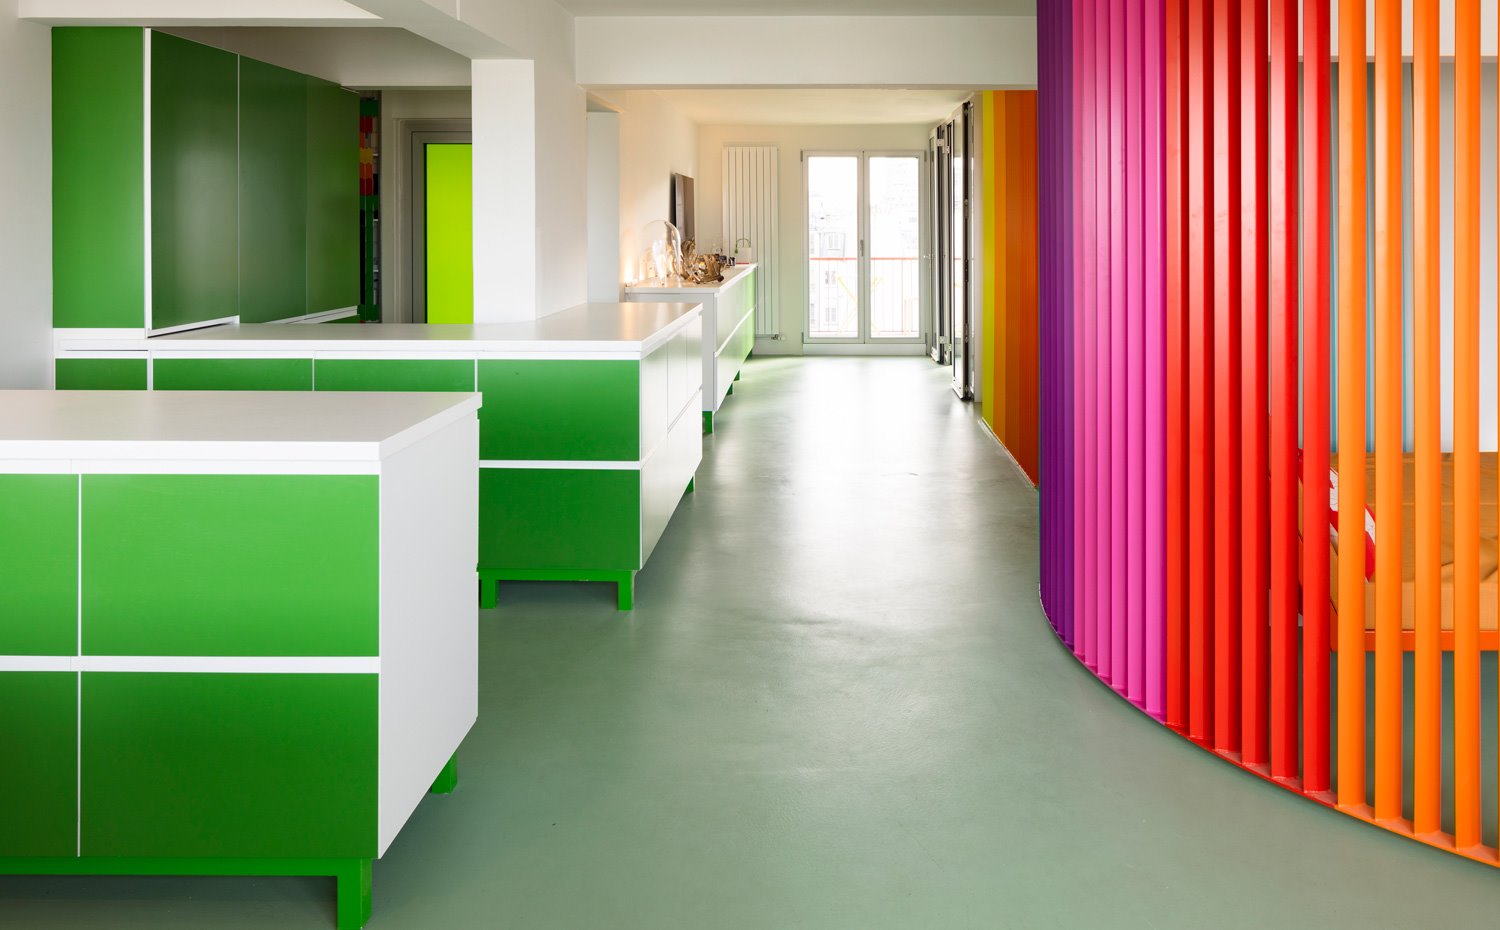 Zona de paso entre cocina, con mobiliario en verde, y biombo en naranja, rojo, rosa y lila